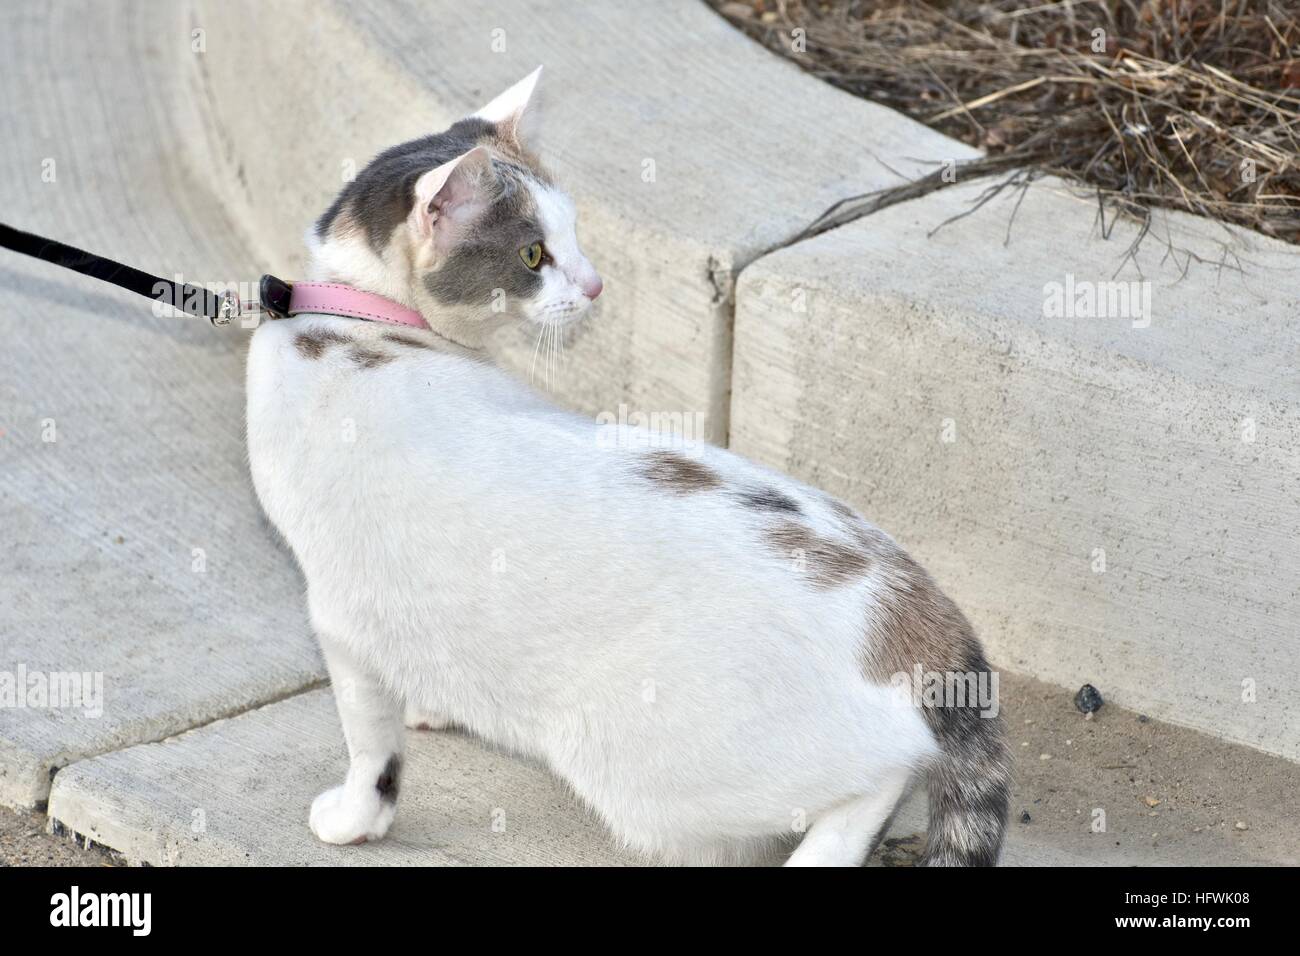 Un beau chat calico en laisse tout en prenant une marche avec son maître Banque D'Images